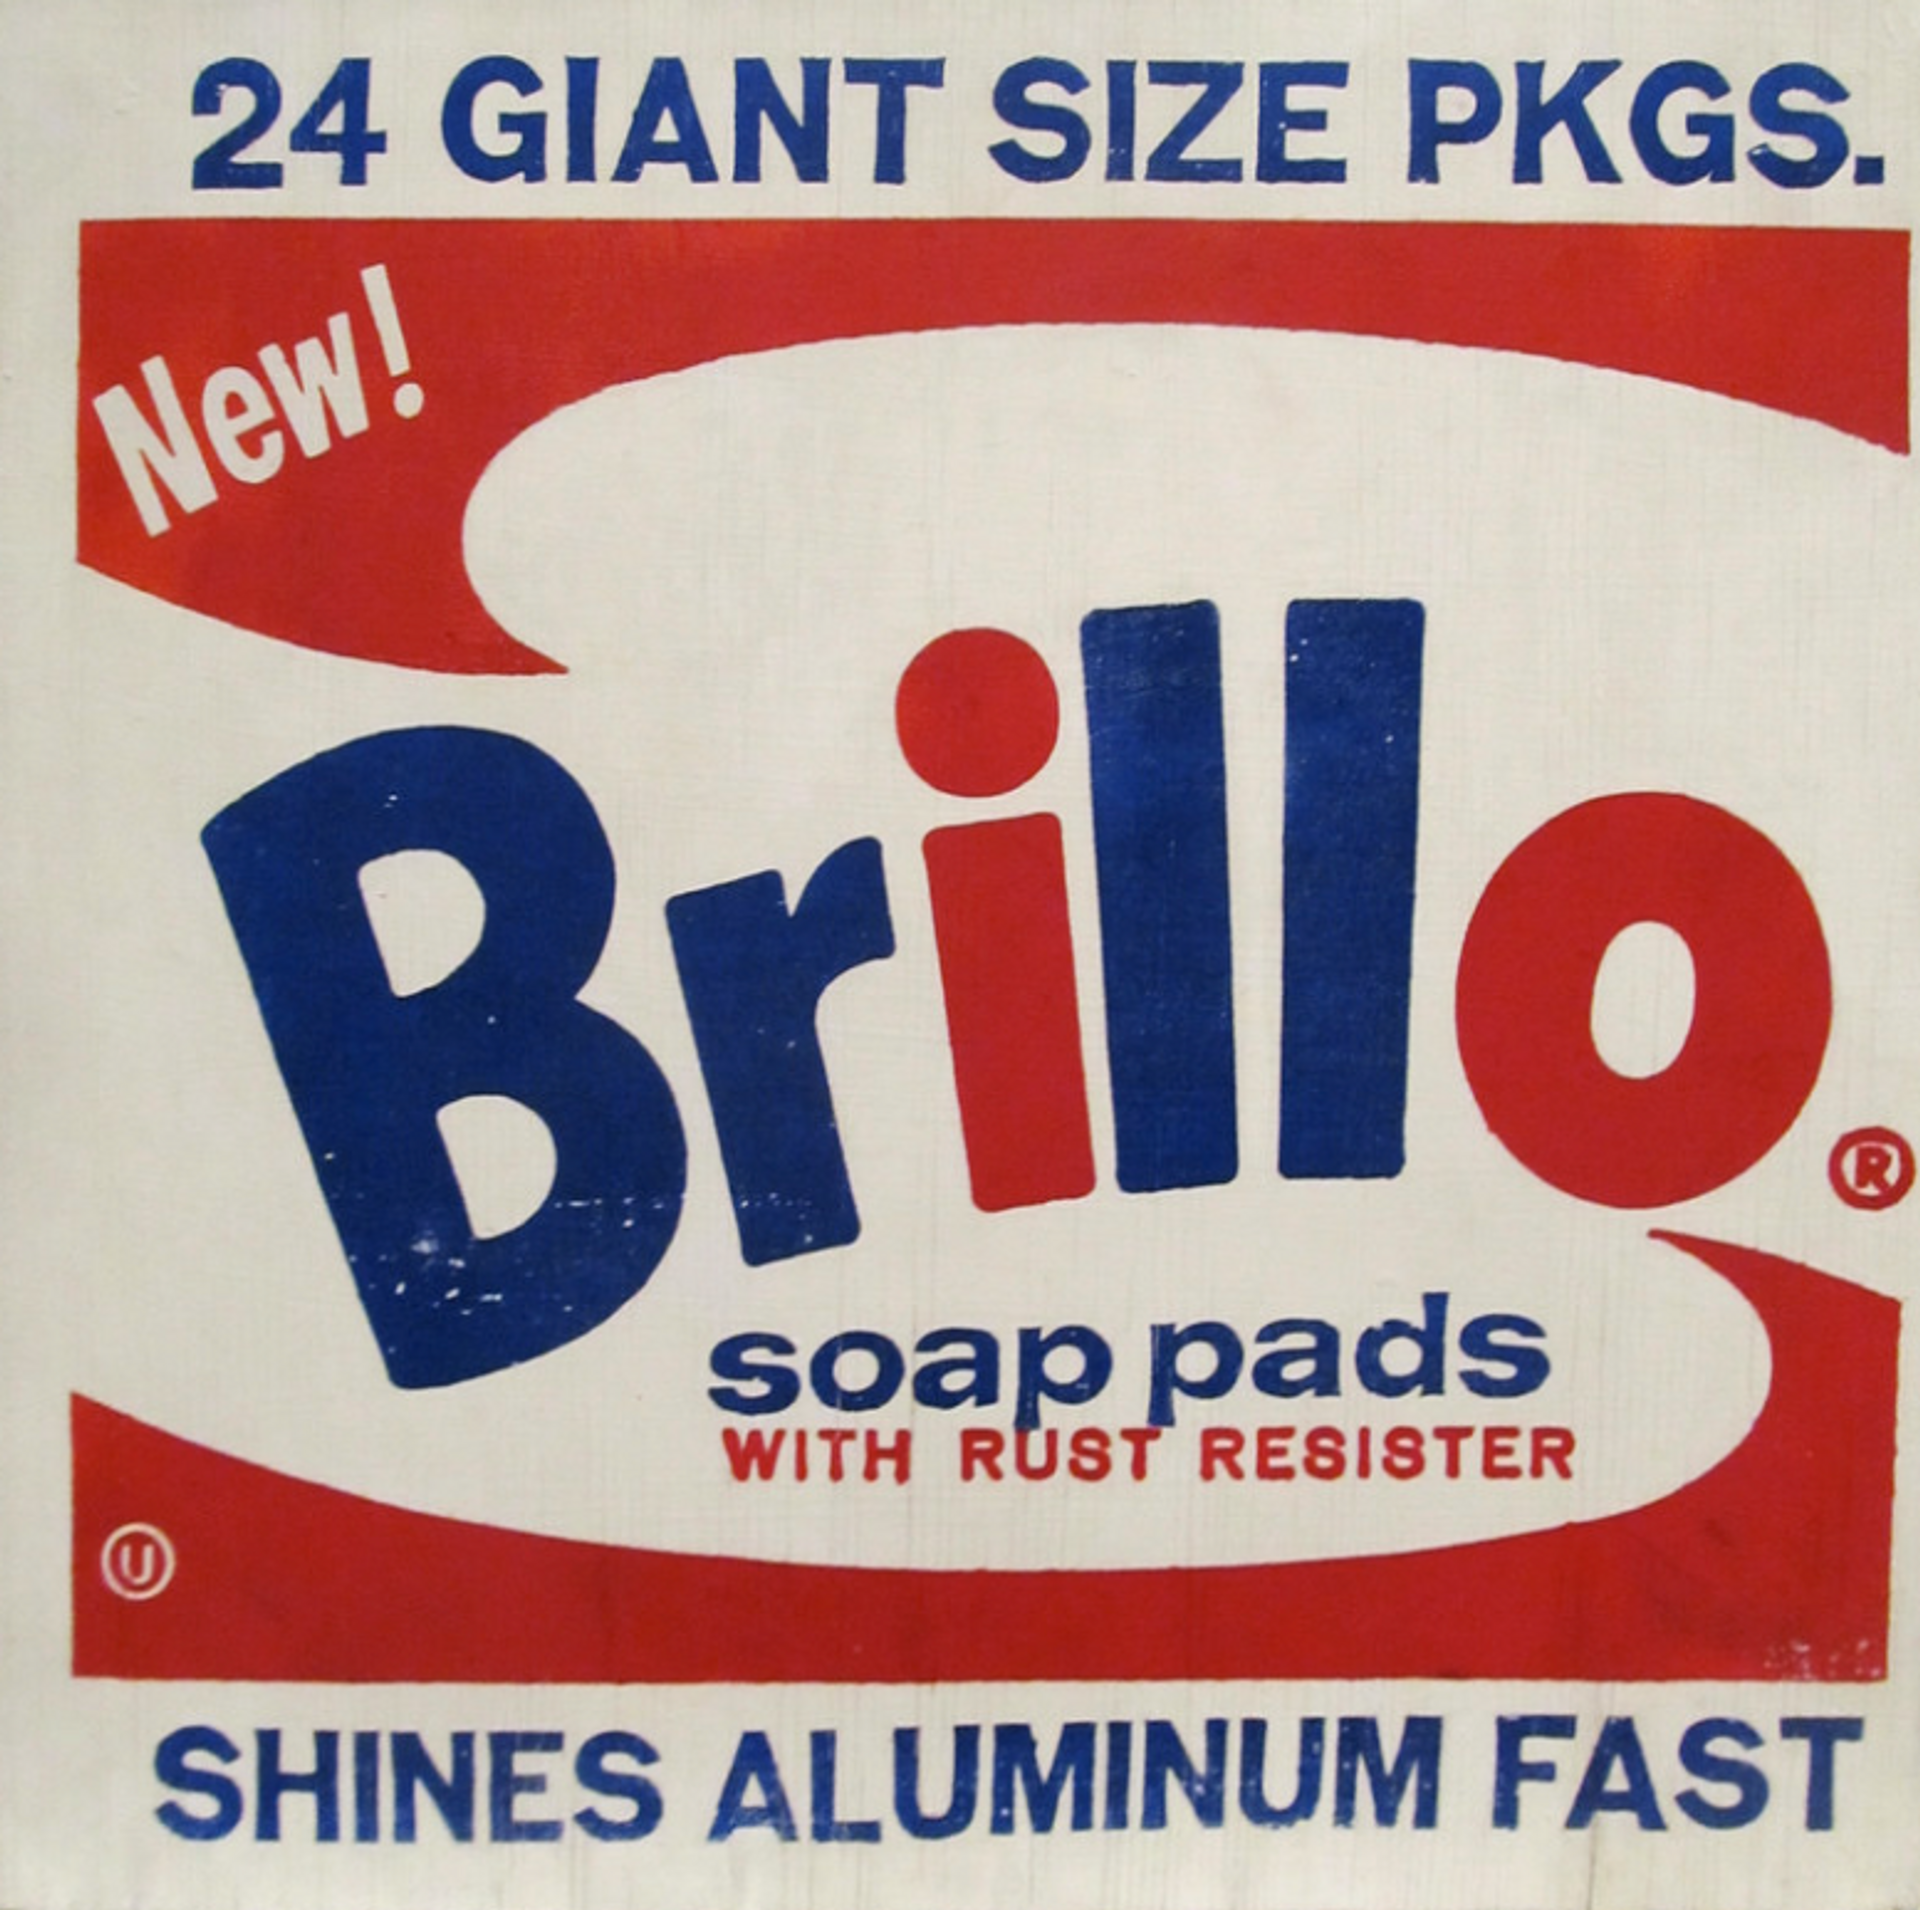 Brillo Box by Andy Warhol - MyArtBroker